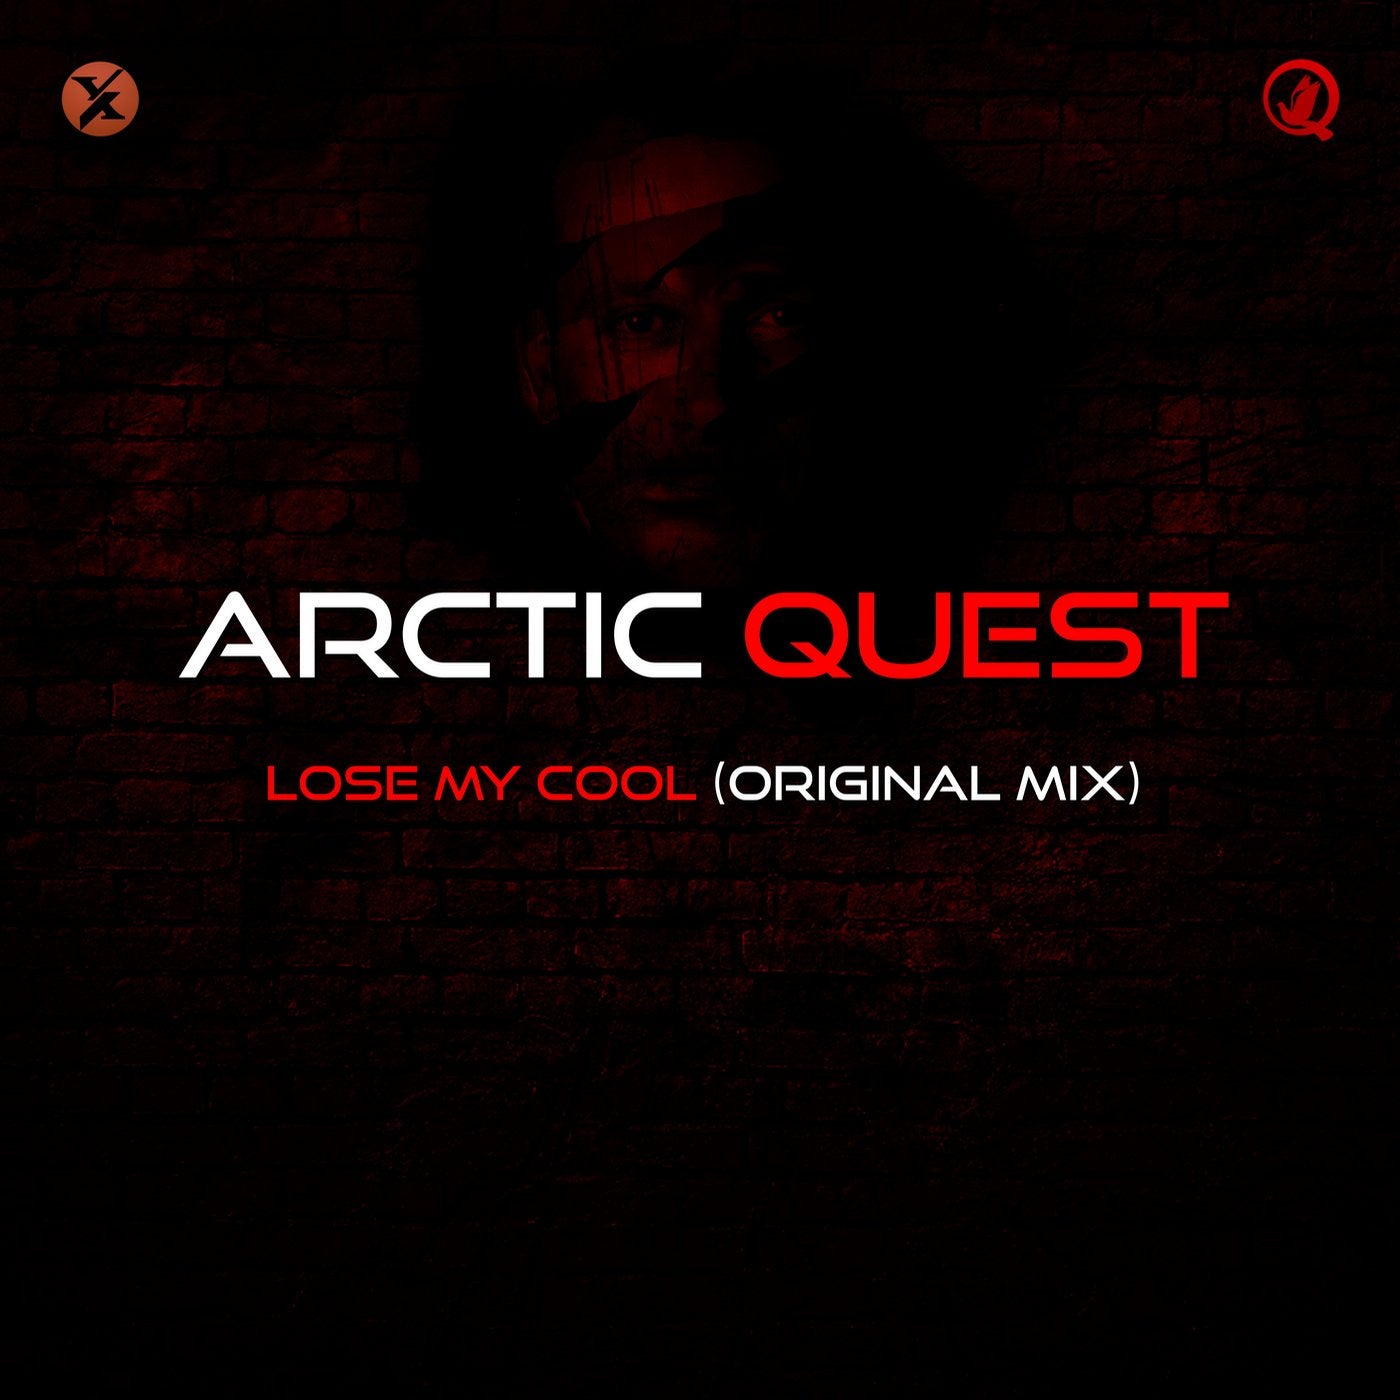 Stream Arctic Quest - Strings & Guitars (Sied van Riel Remix) by Sied van  Riel